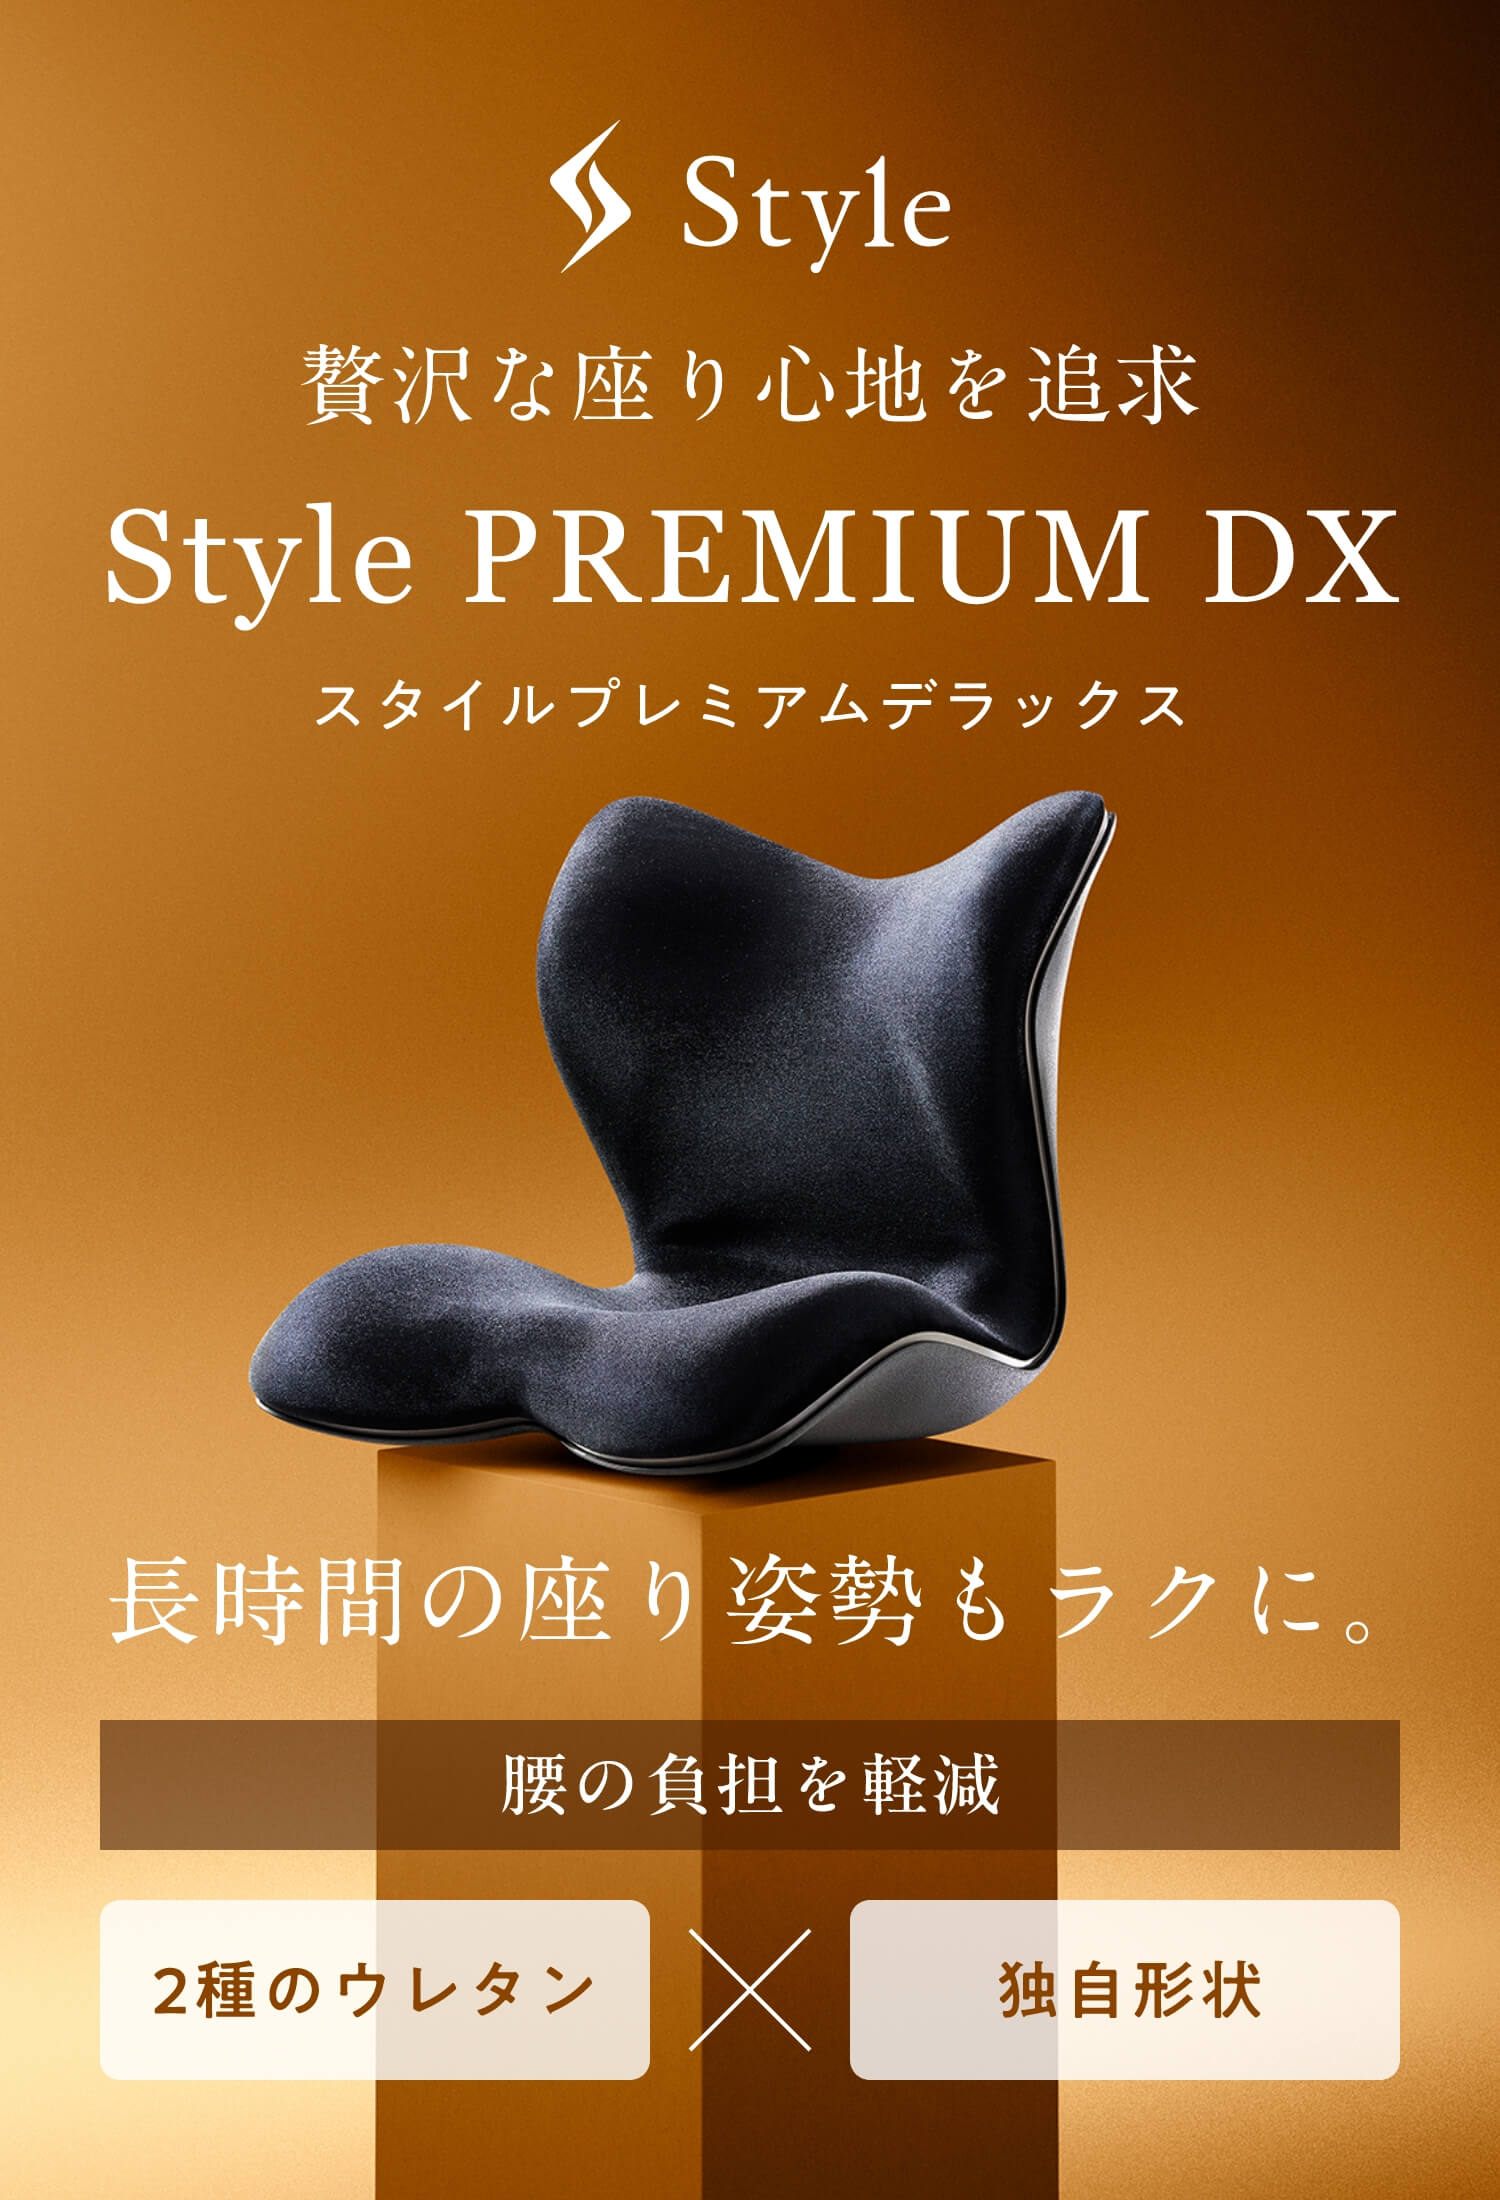 贅沢な座り心地を追求 Style PREMIUM DX